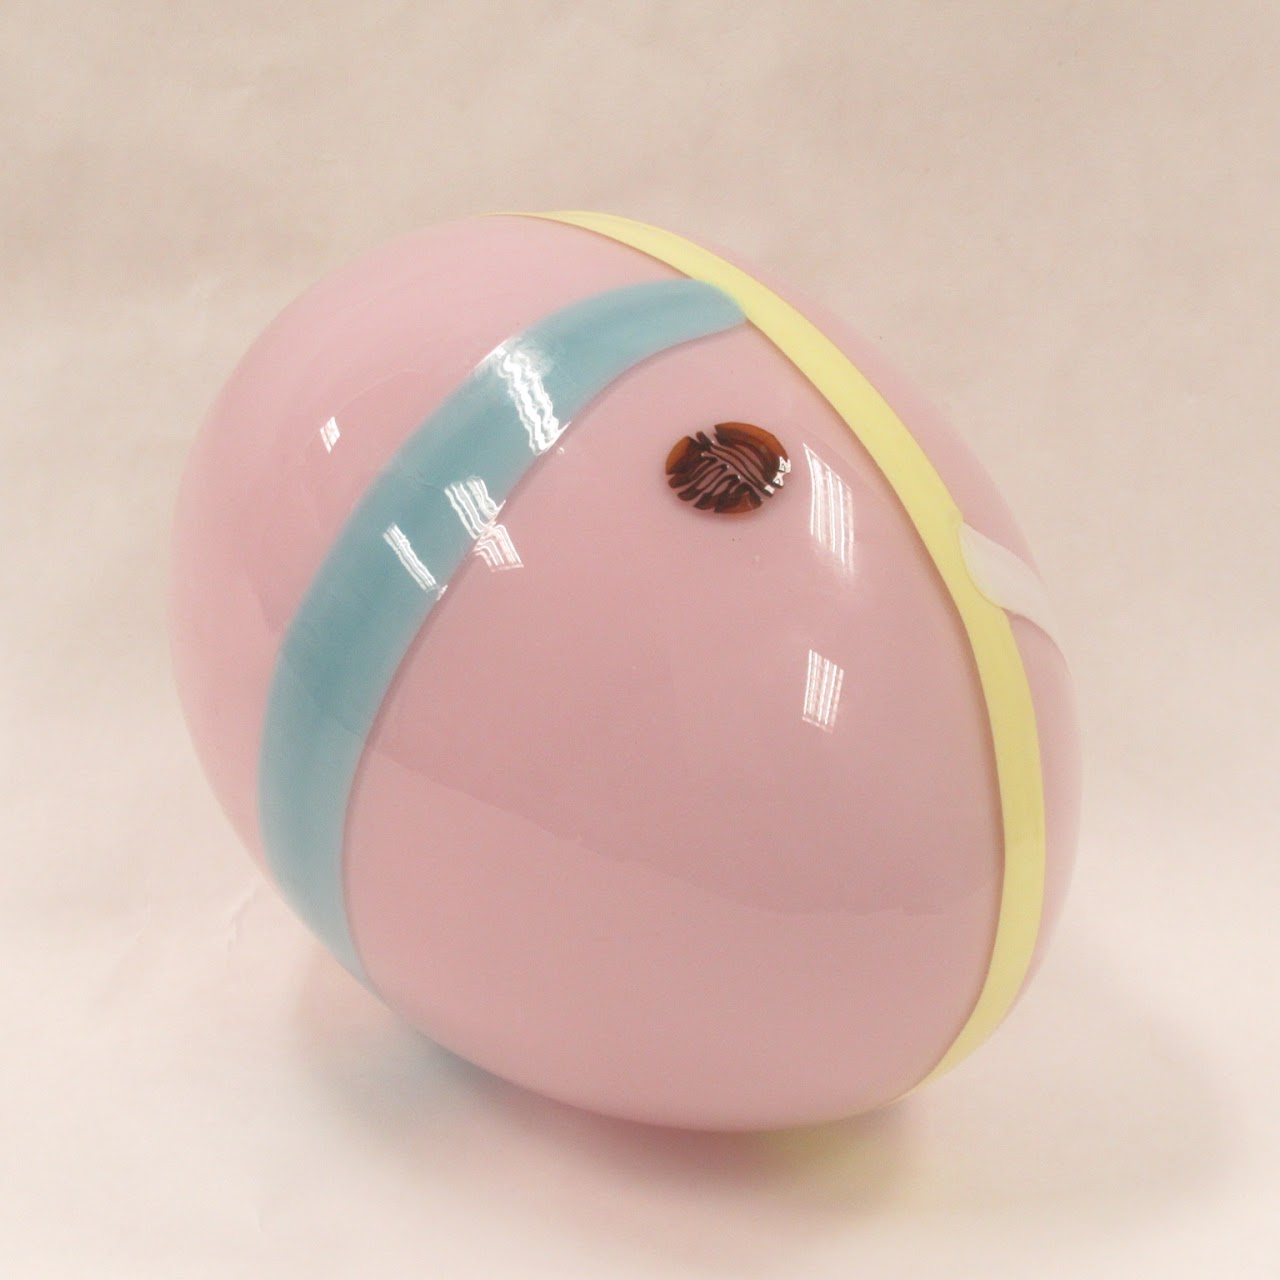 Lino Tagliapietra for Oggetti Murano Glass Egg